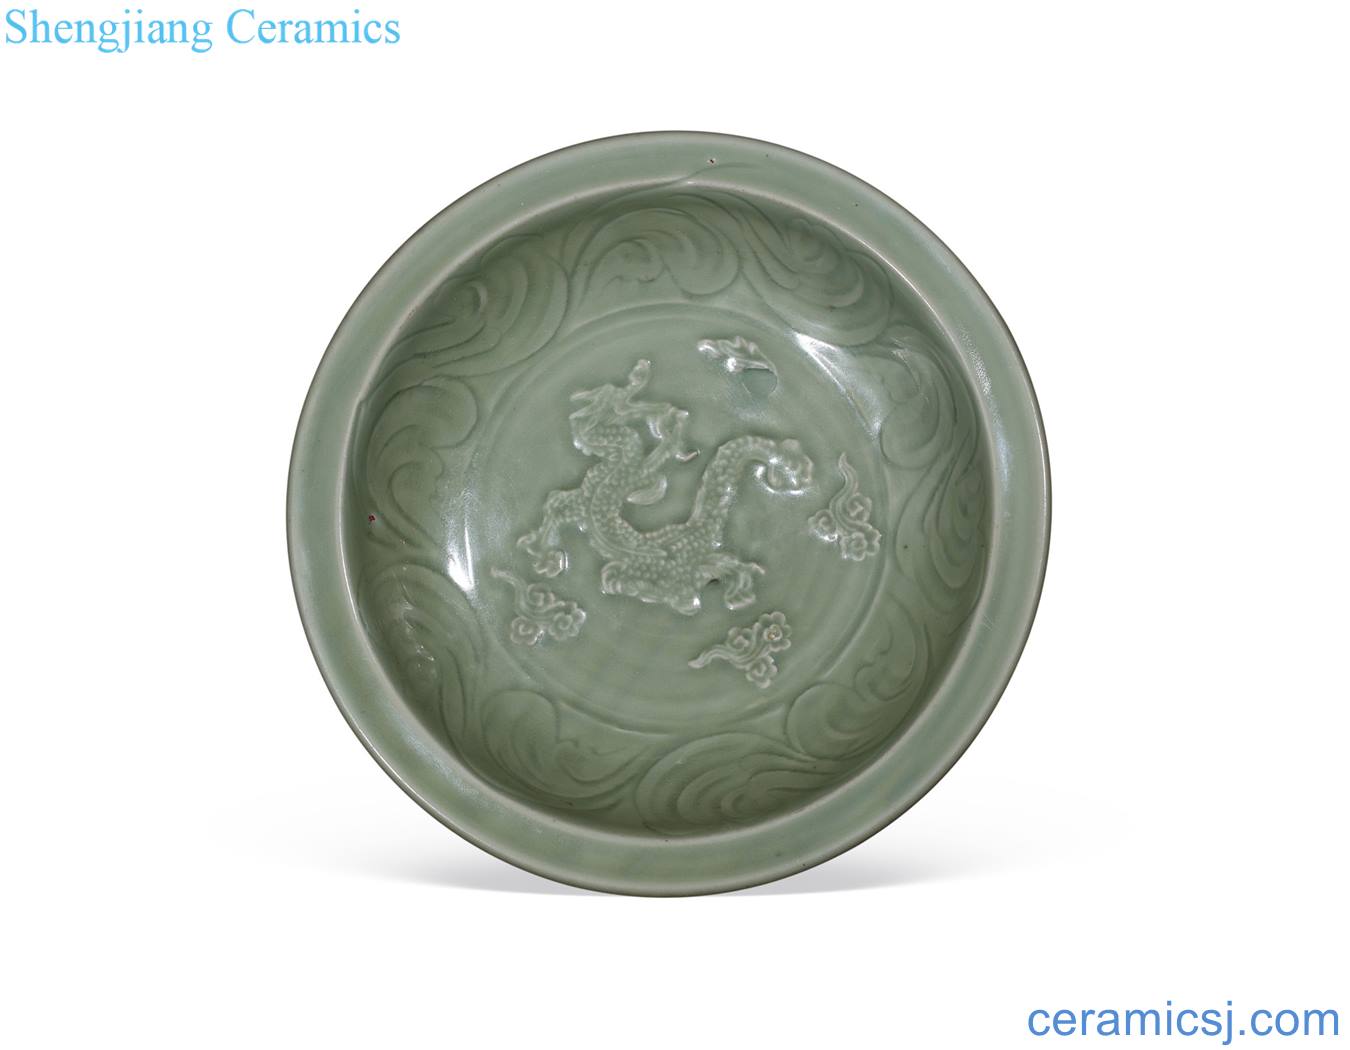 yuan Longquan celadon stamps dragon pattern plate